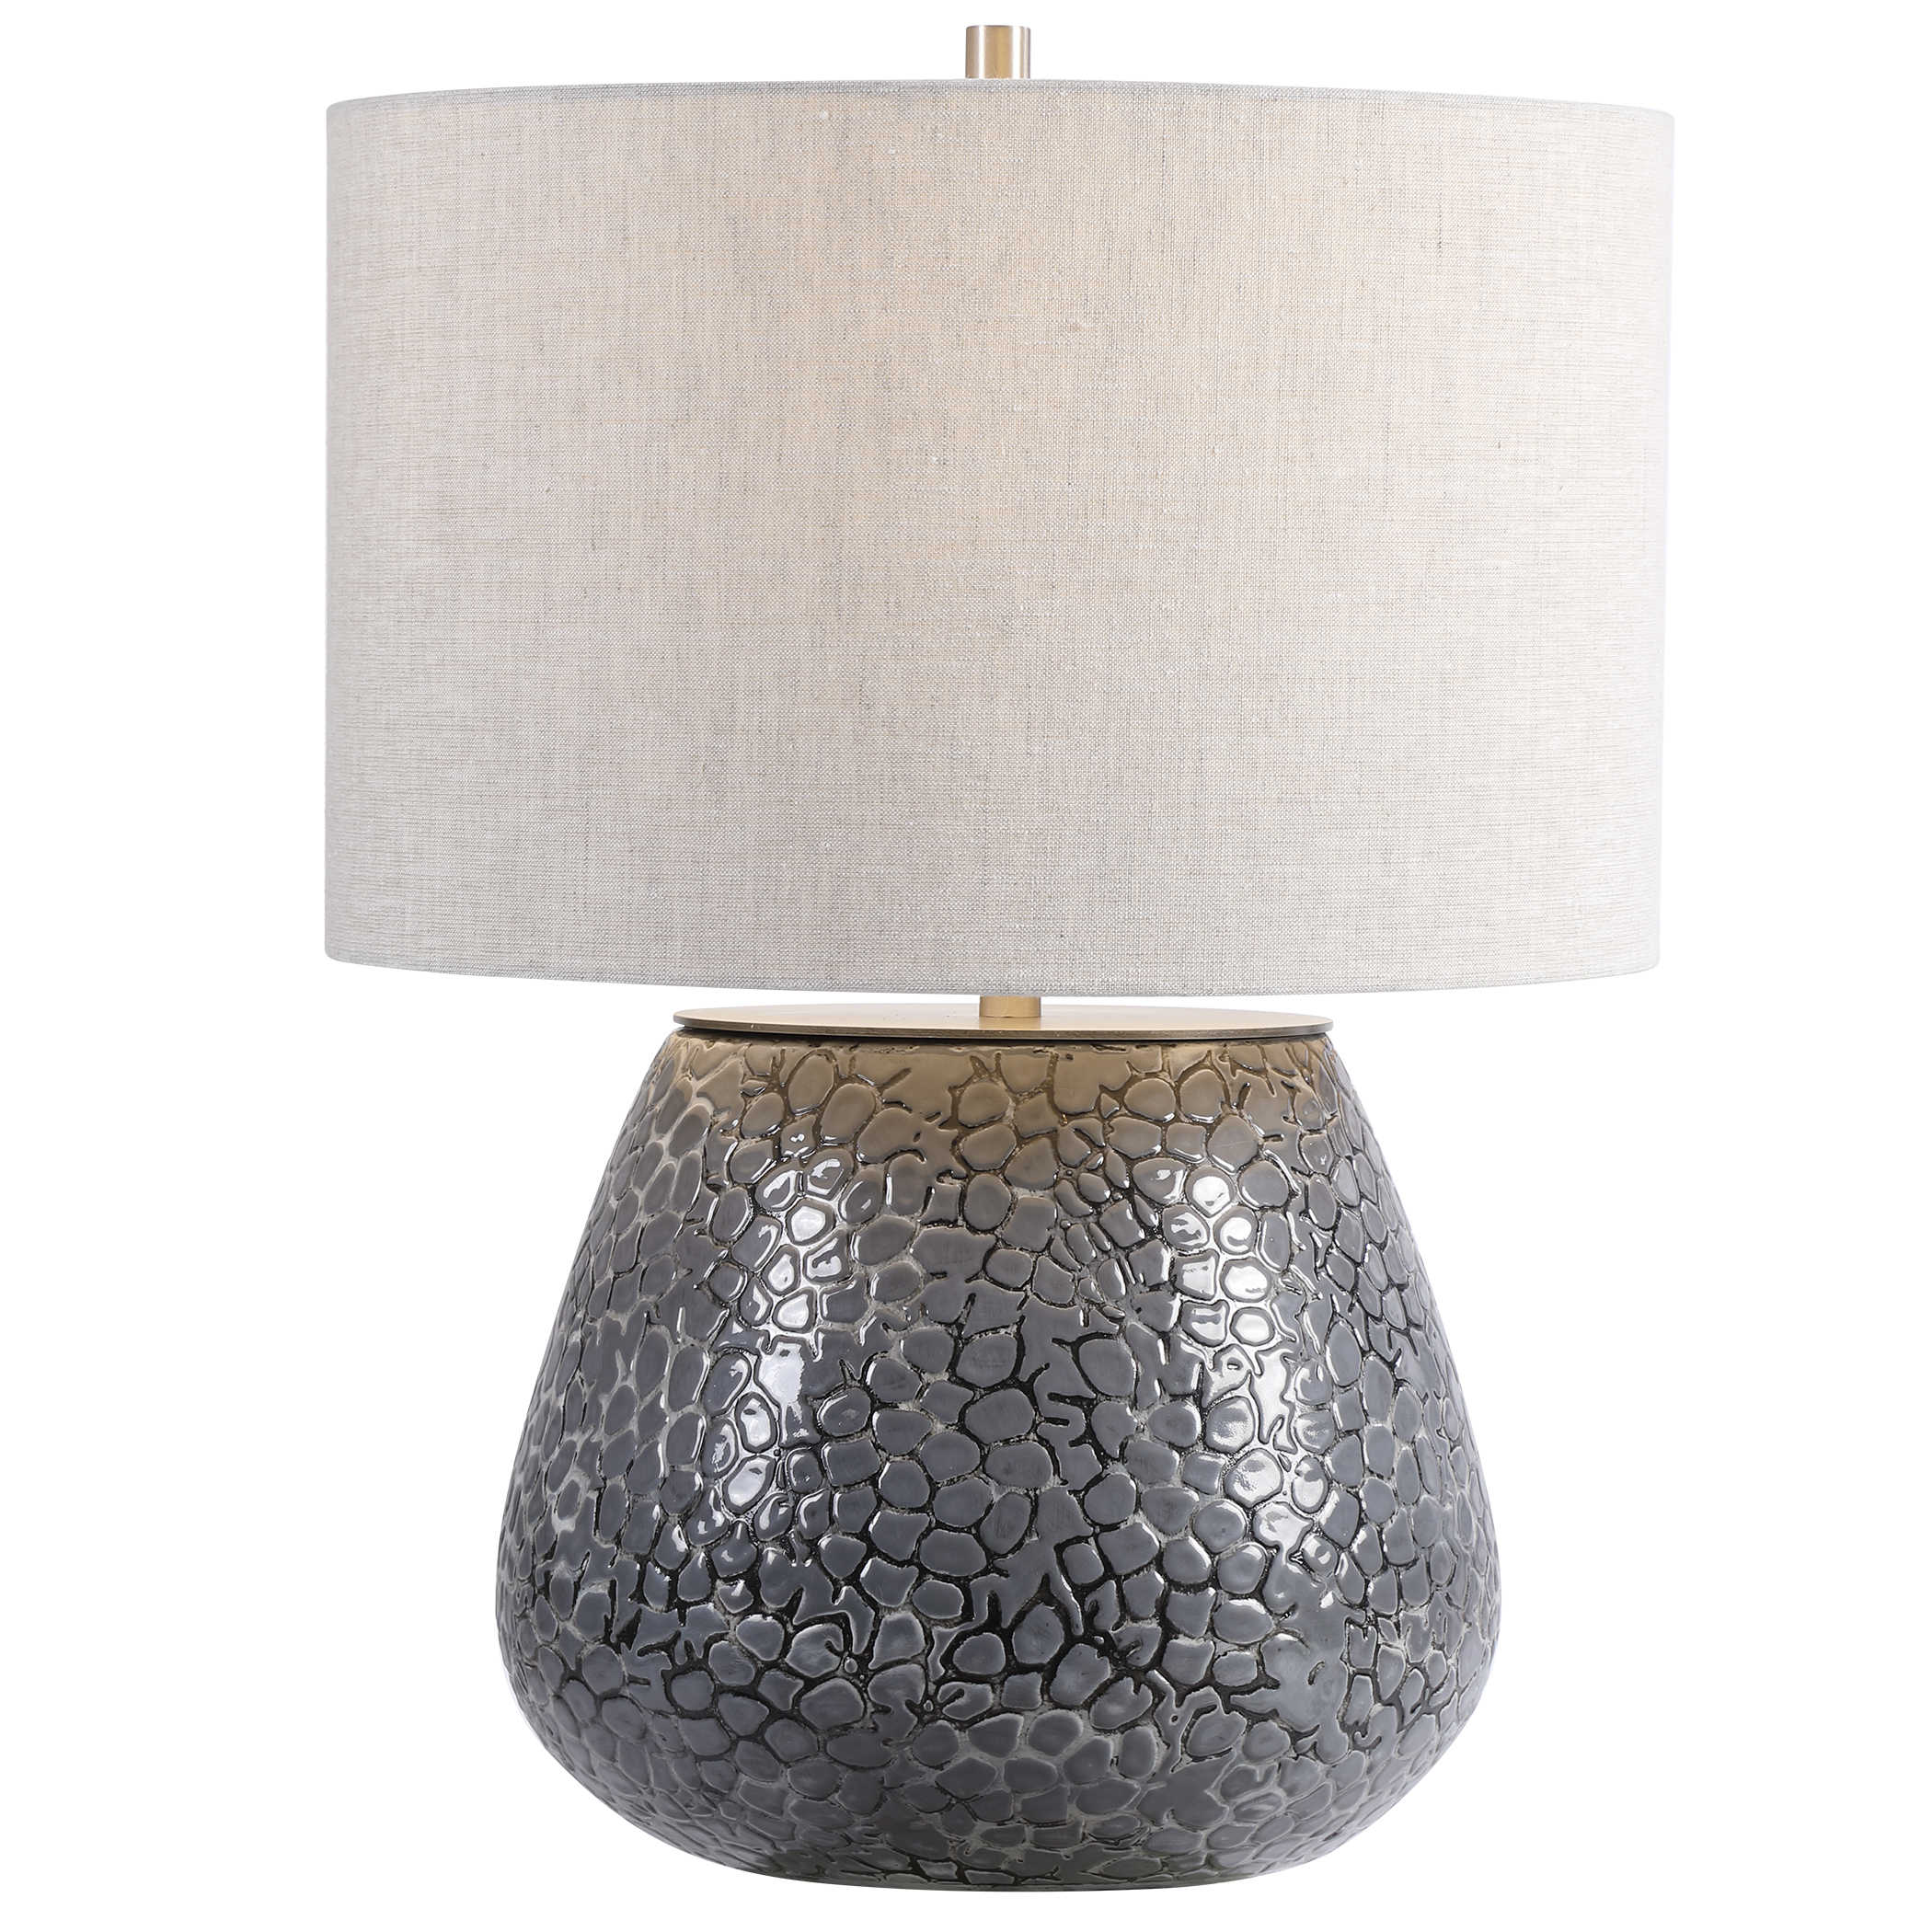 Настольная лампа PEBBLES TABLE LAMP 28445-1 Uttermost США